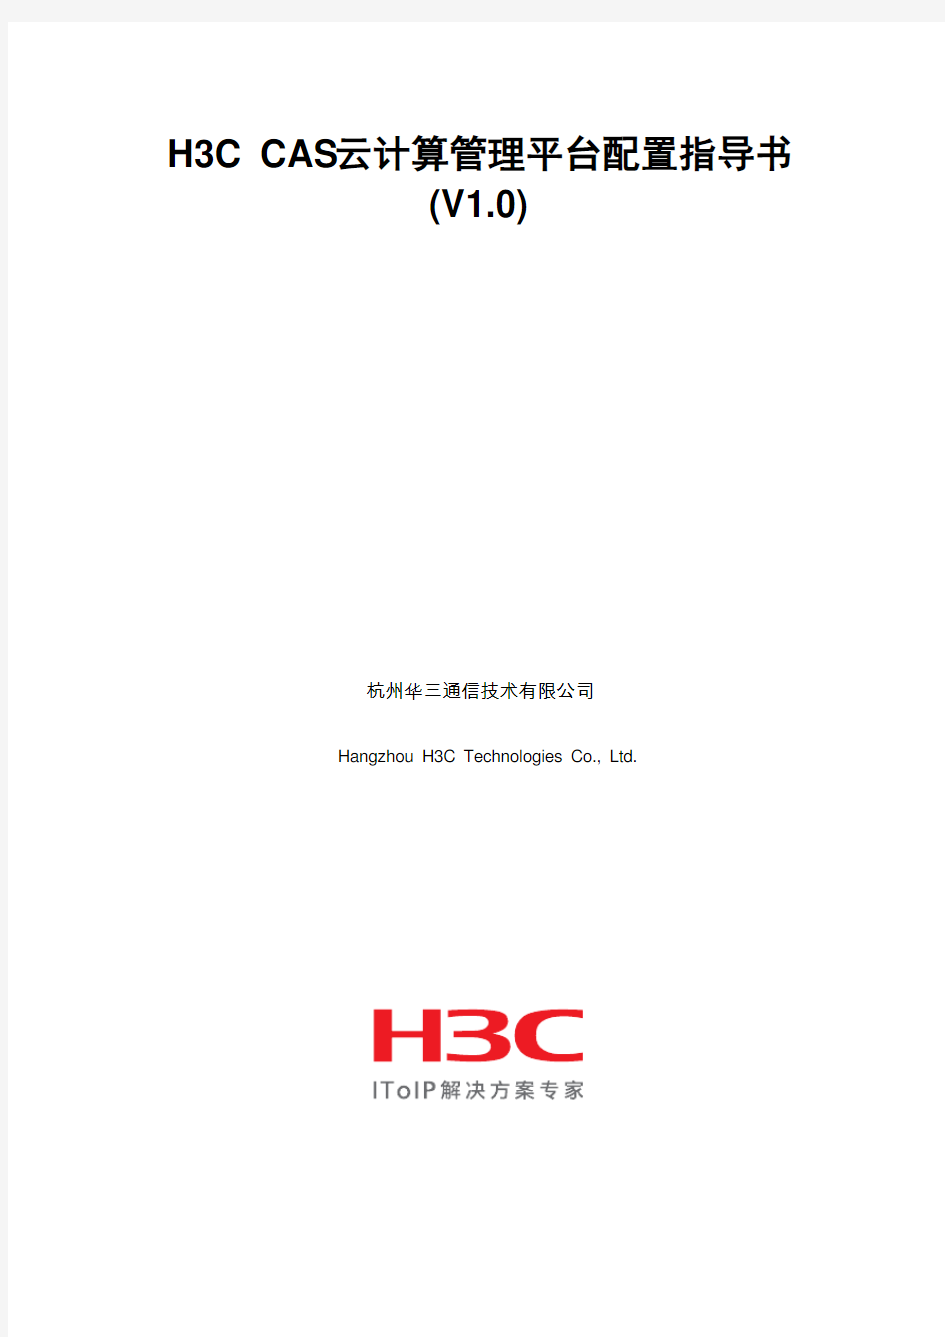 H3C CAS云计算管理平台配置指导书V1.0